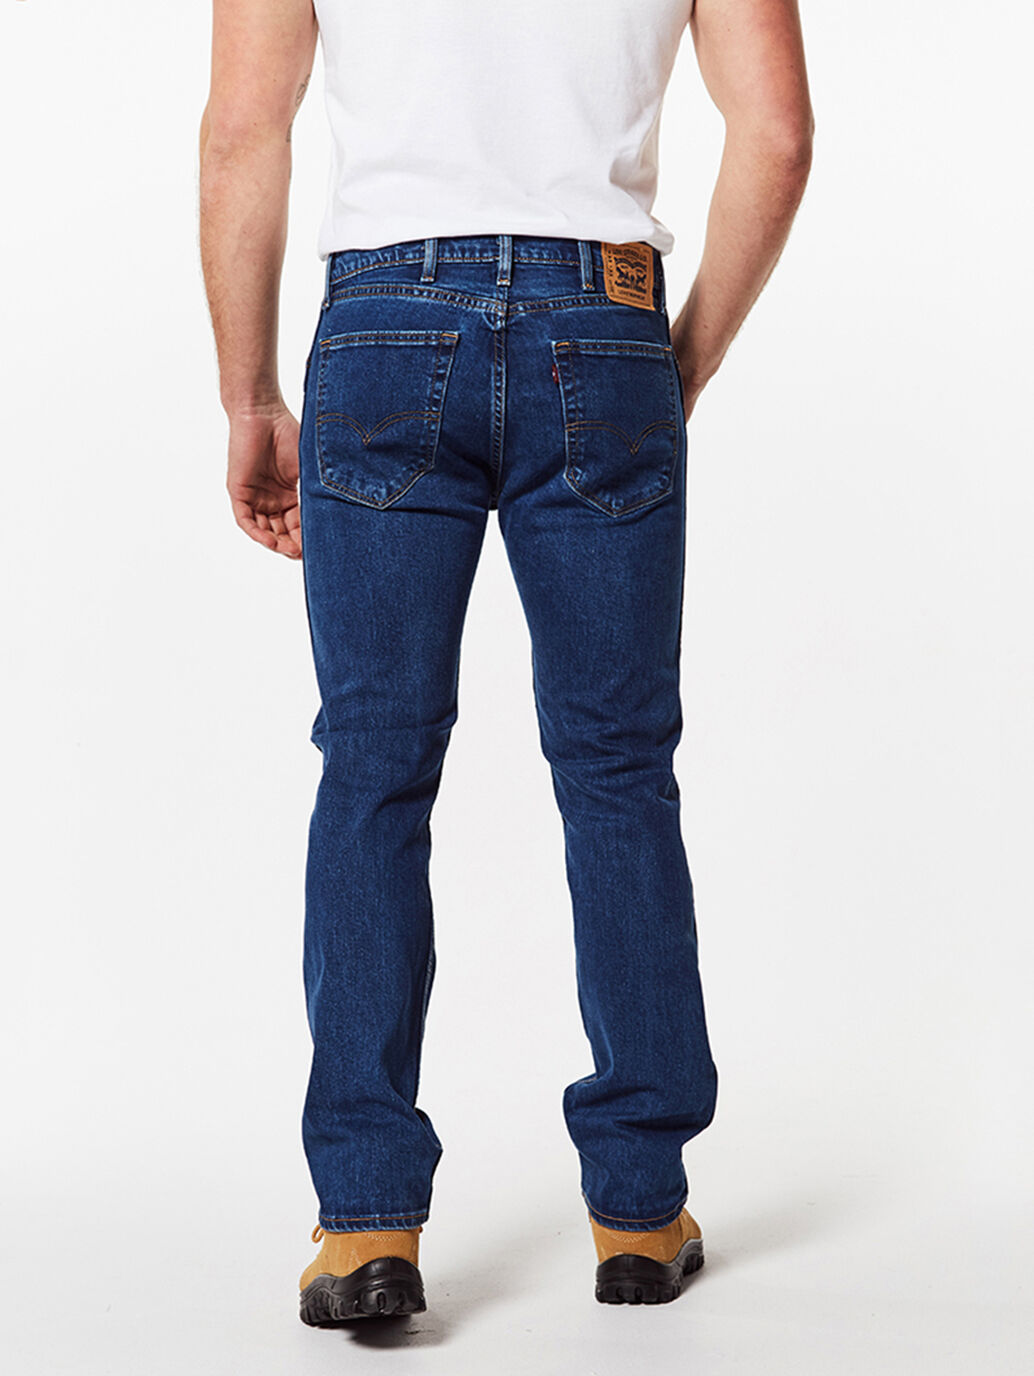 jeans levis 505